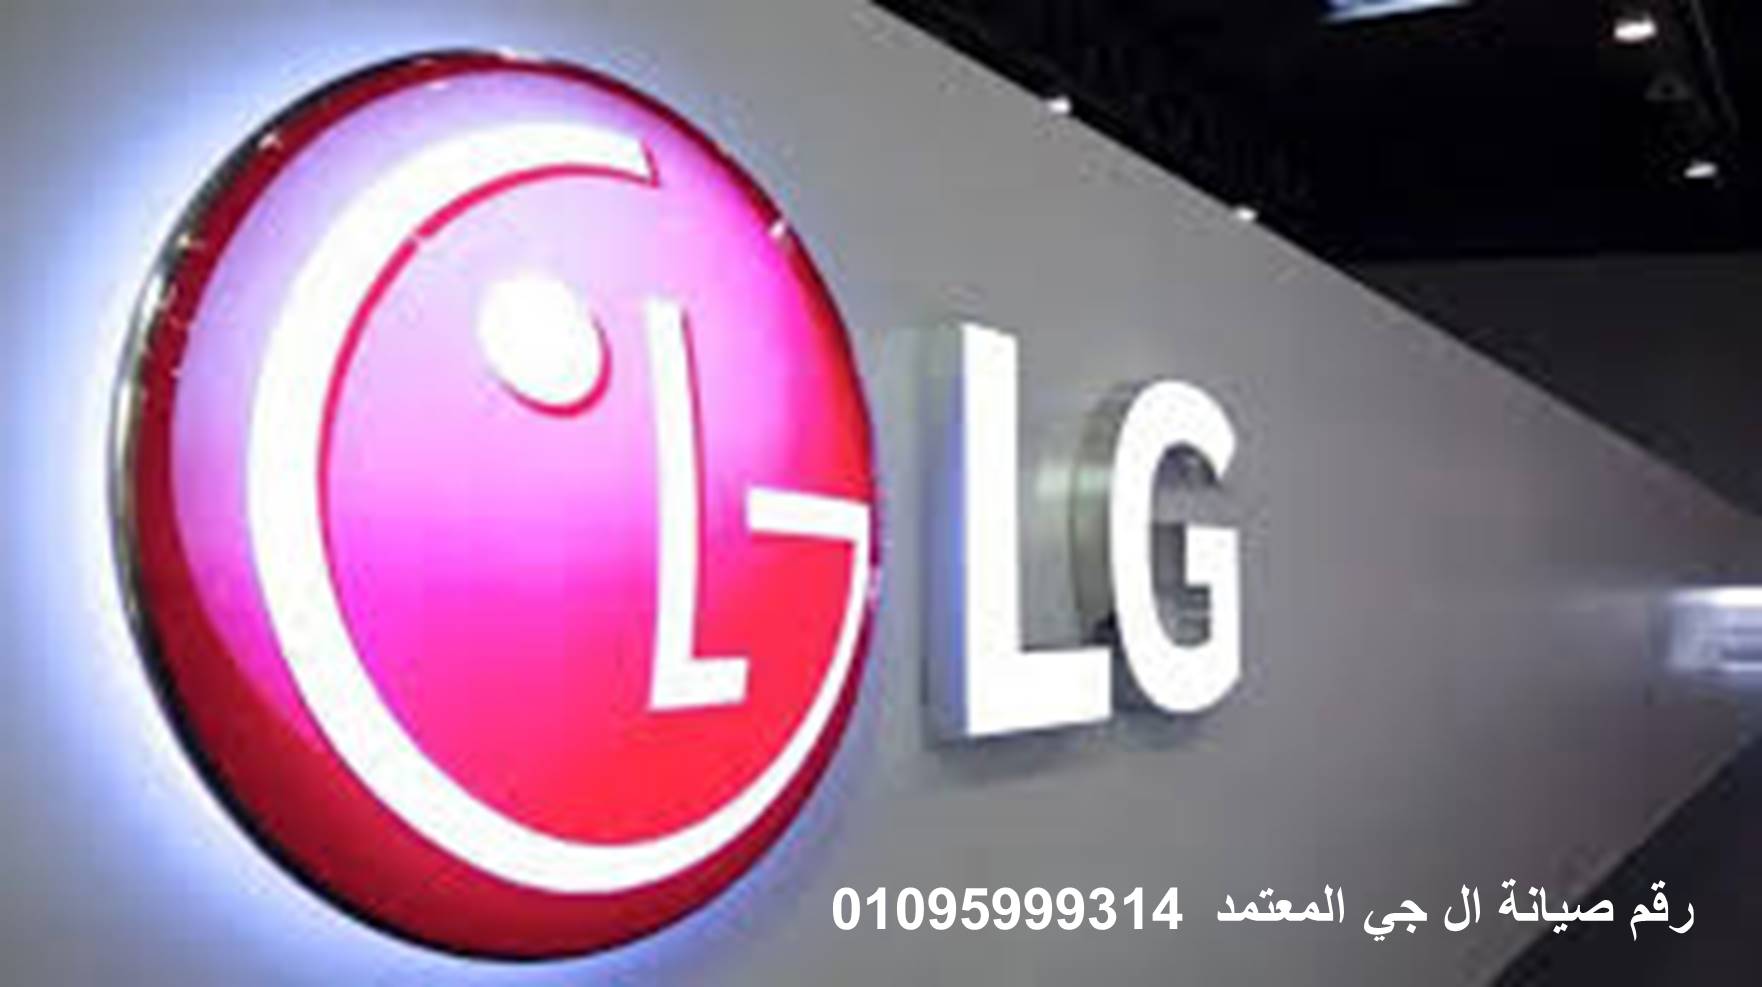 عناوين صيانة ثلاجات LG السنبلاوين 01283377353